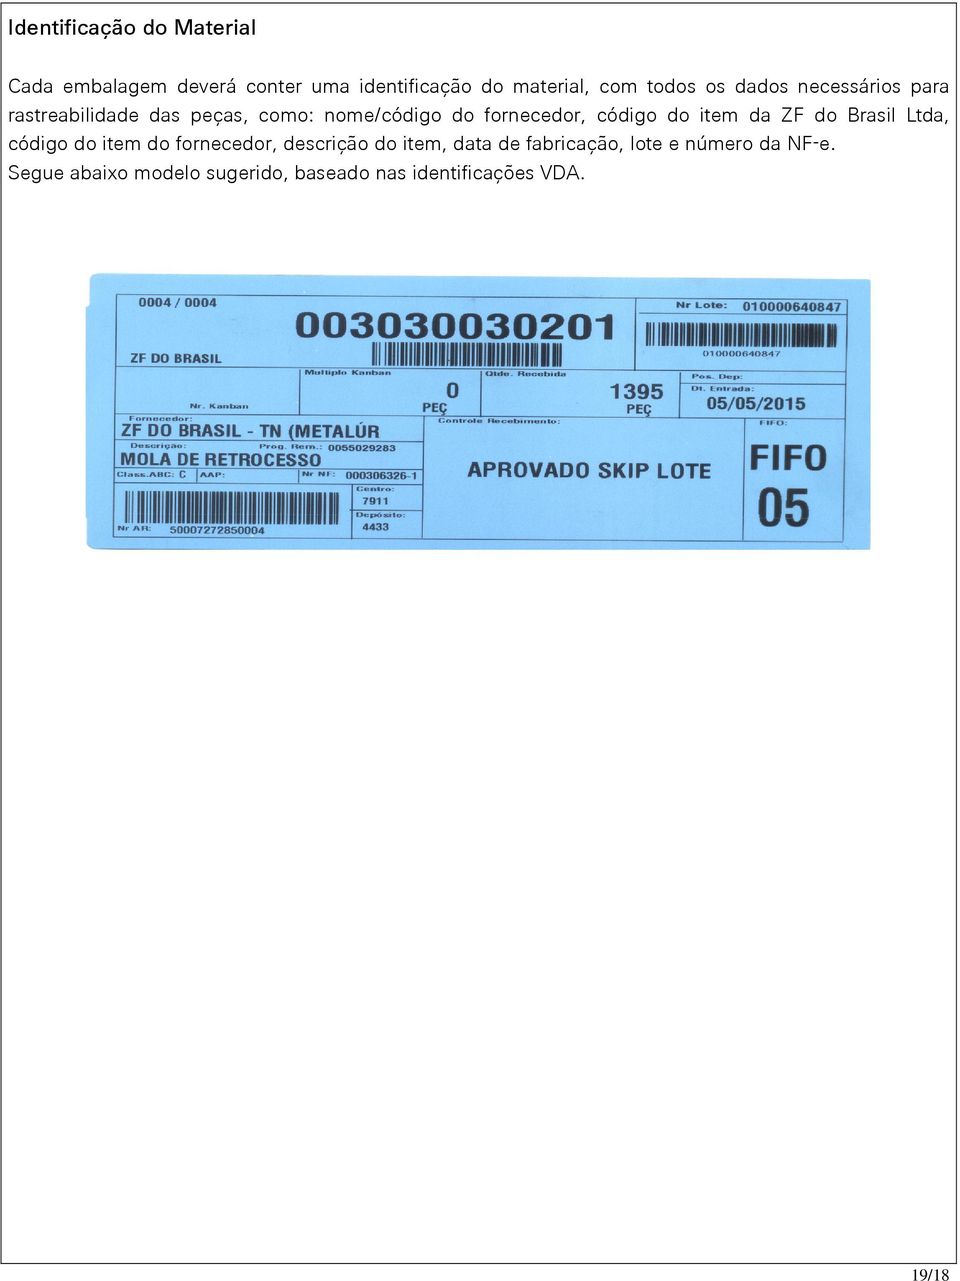 código do item da ZF do Brasil Ltda, código do item do fornecedor, descrição do item, data de